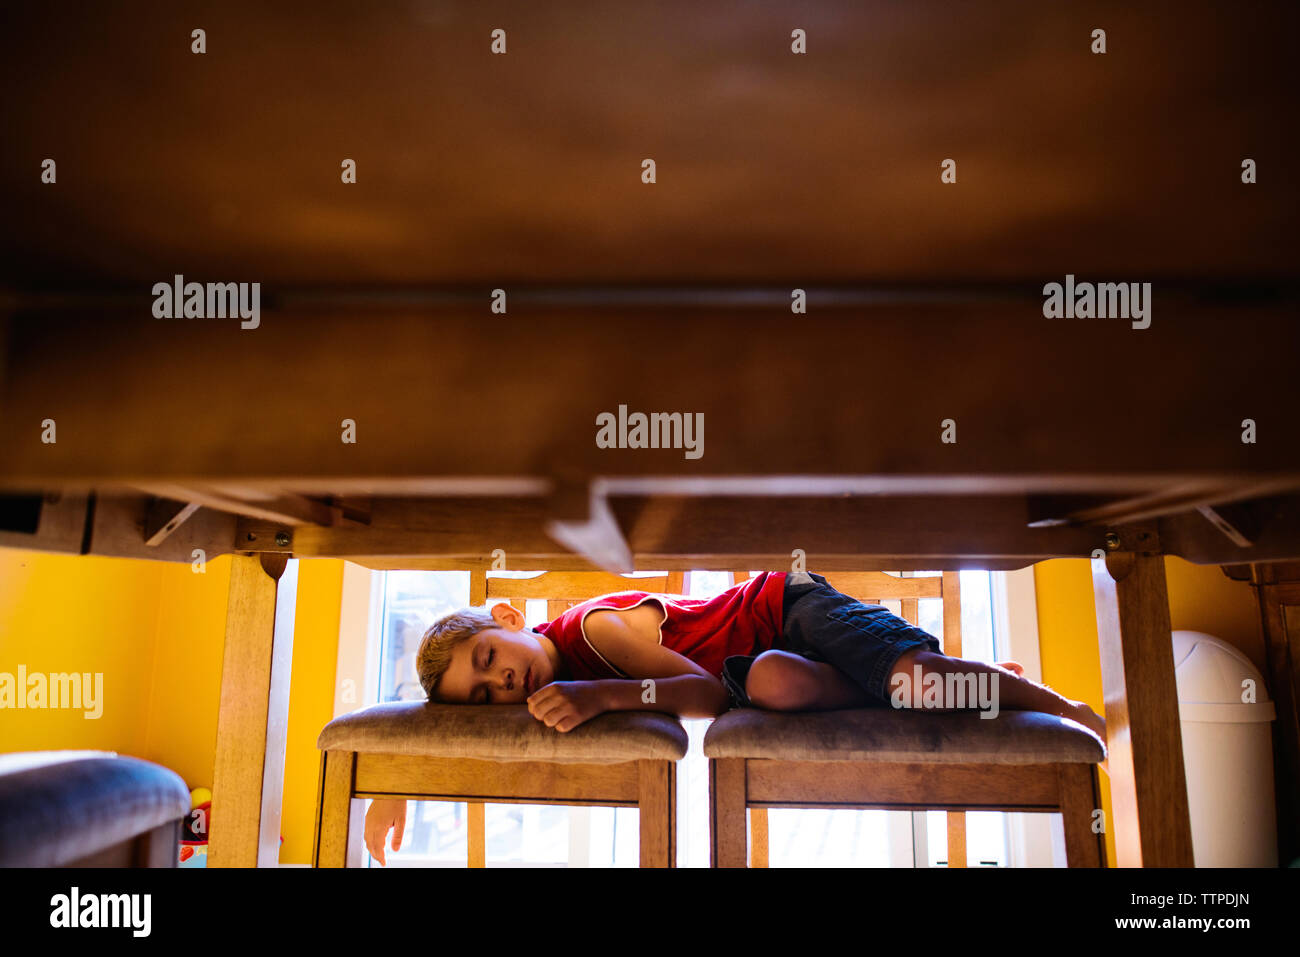 Le garçon endormi sur des chaises à la maison vu du dessous de table Banque D'Images